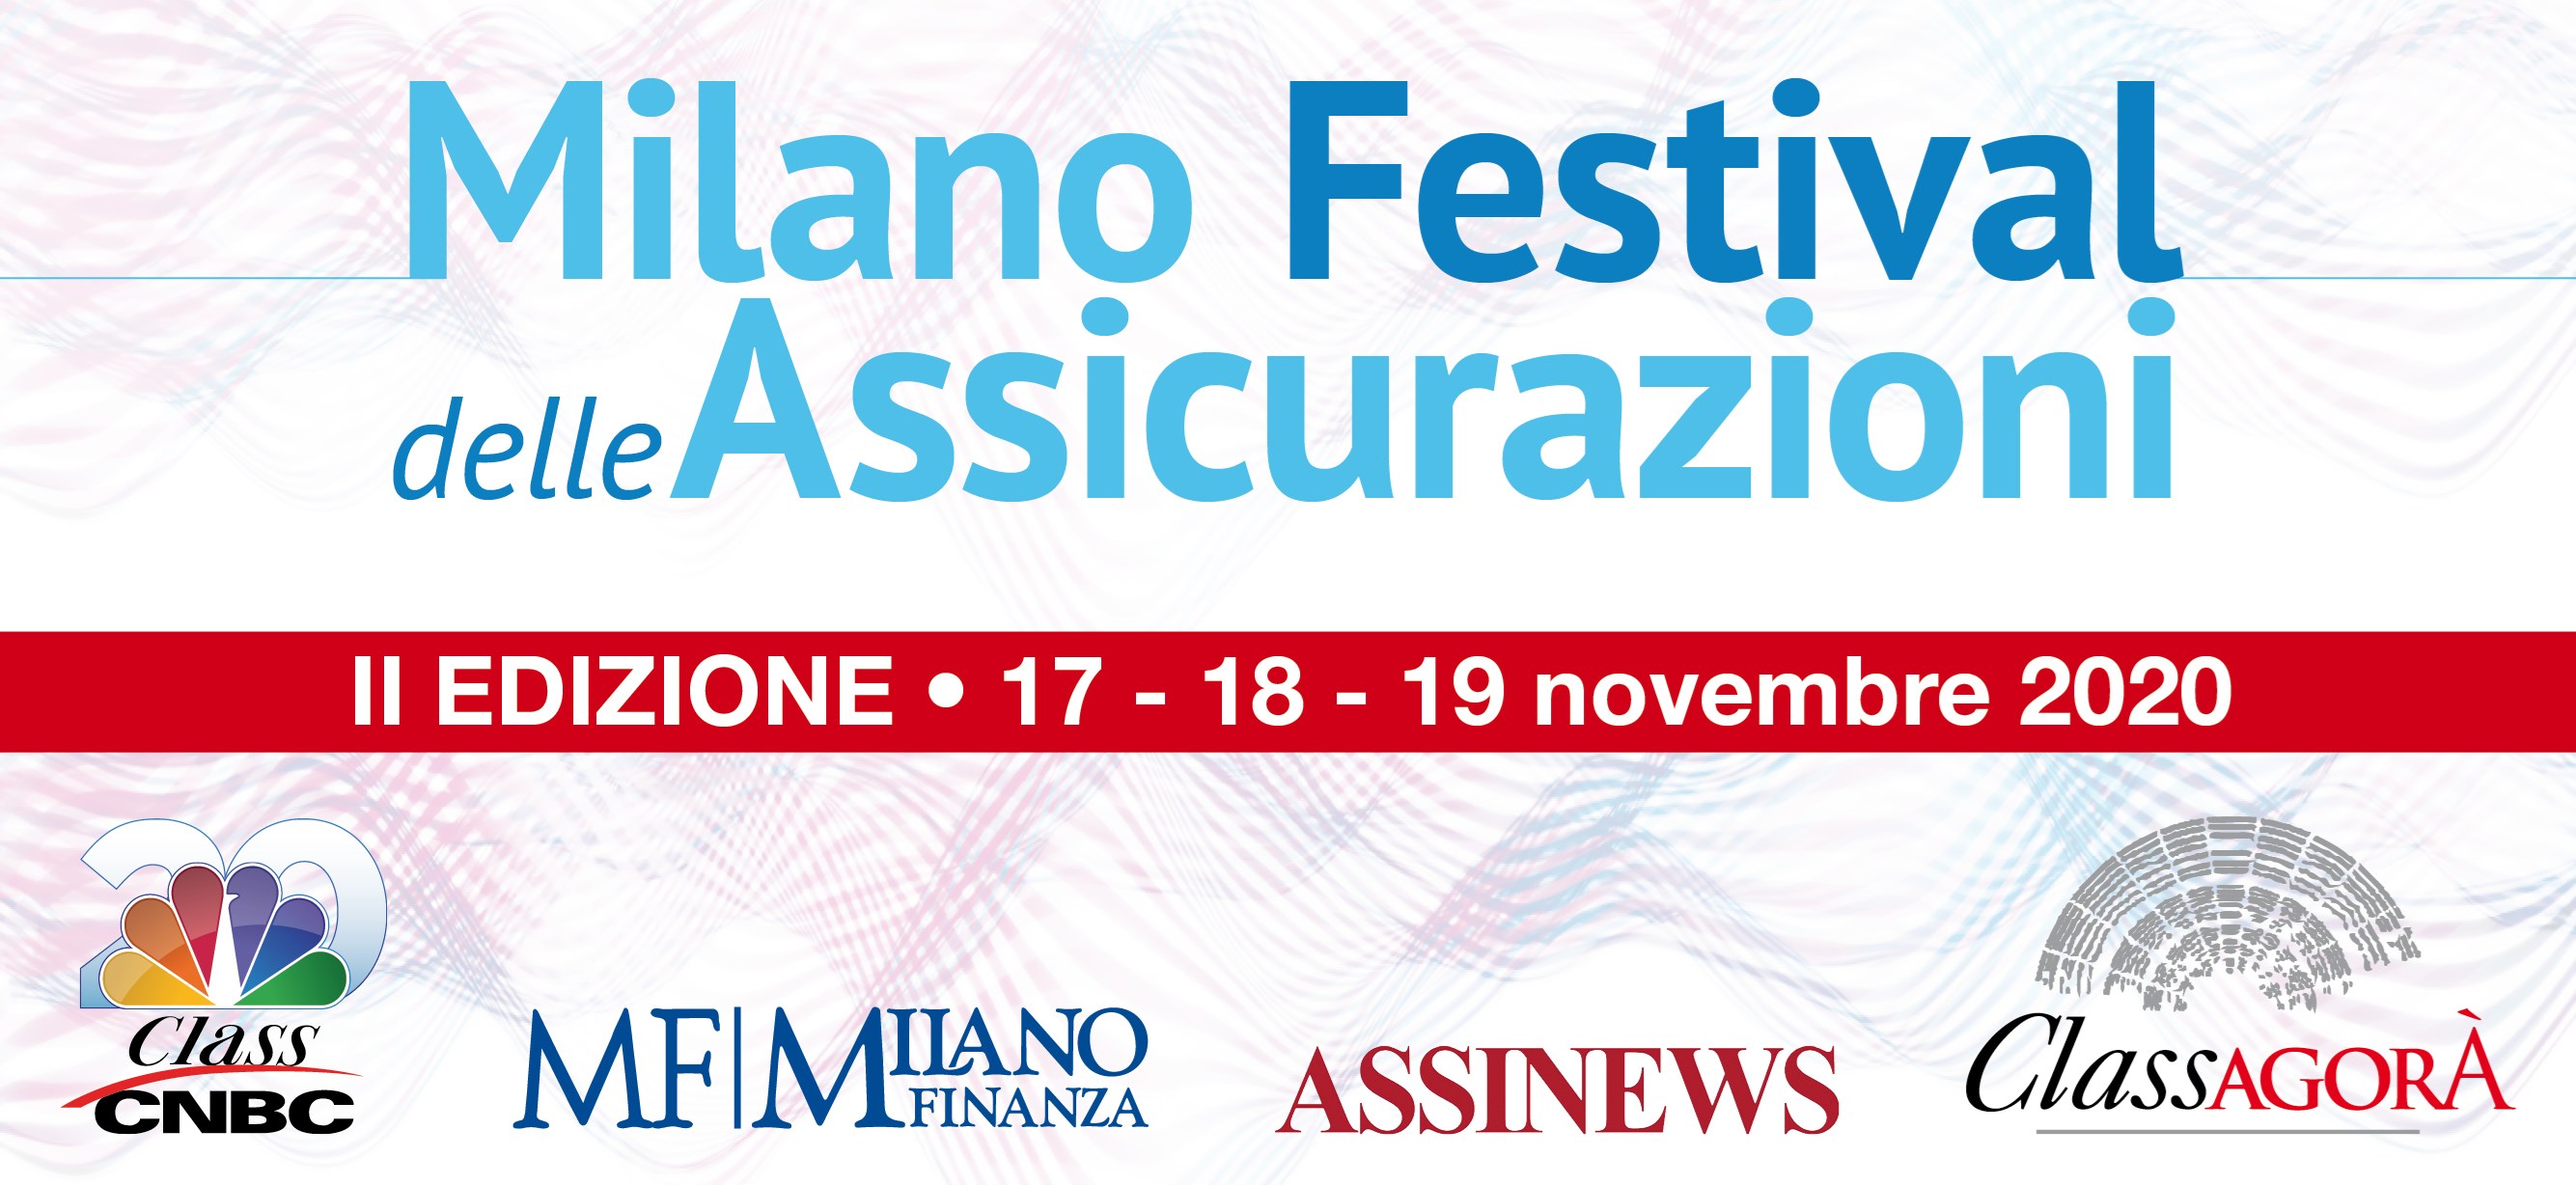 Milano FESTIVAL delle ASSICURAZIONI 2020